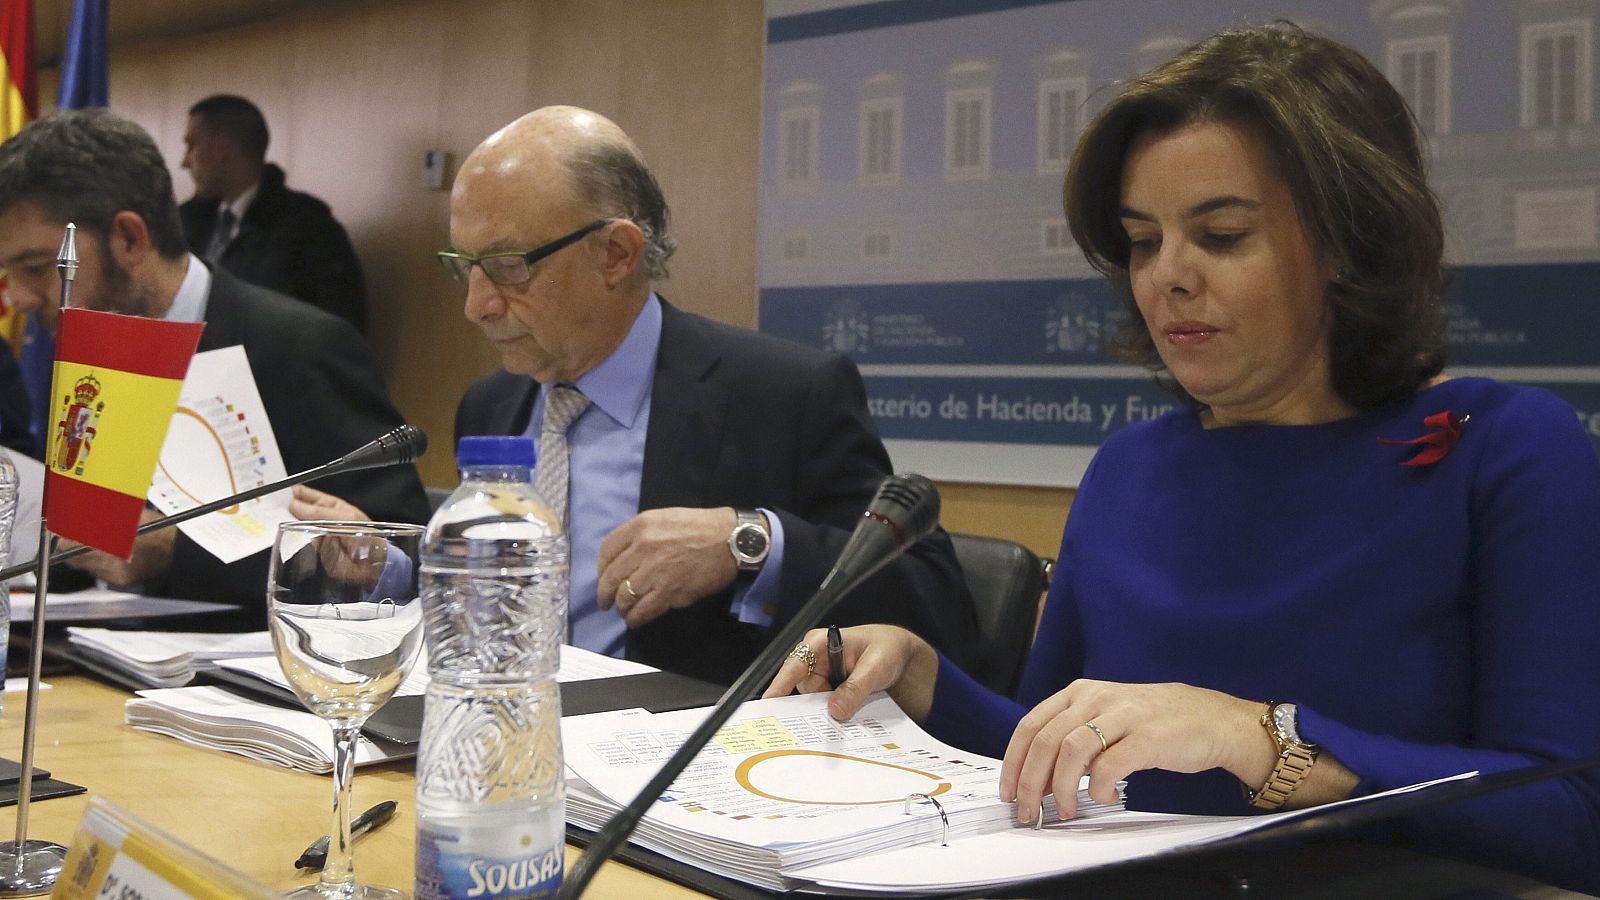 La vicepresidenta del Gobierno, Soraya Sáenz de Santamaria, y el ministro de Hacienda, Cristóbal Montoro